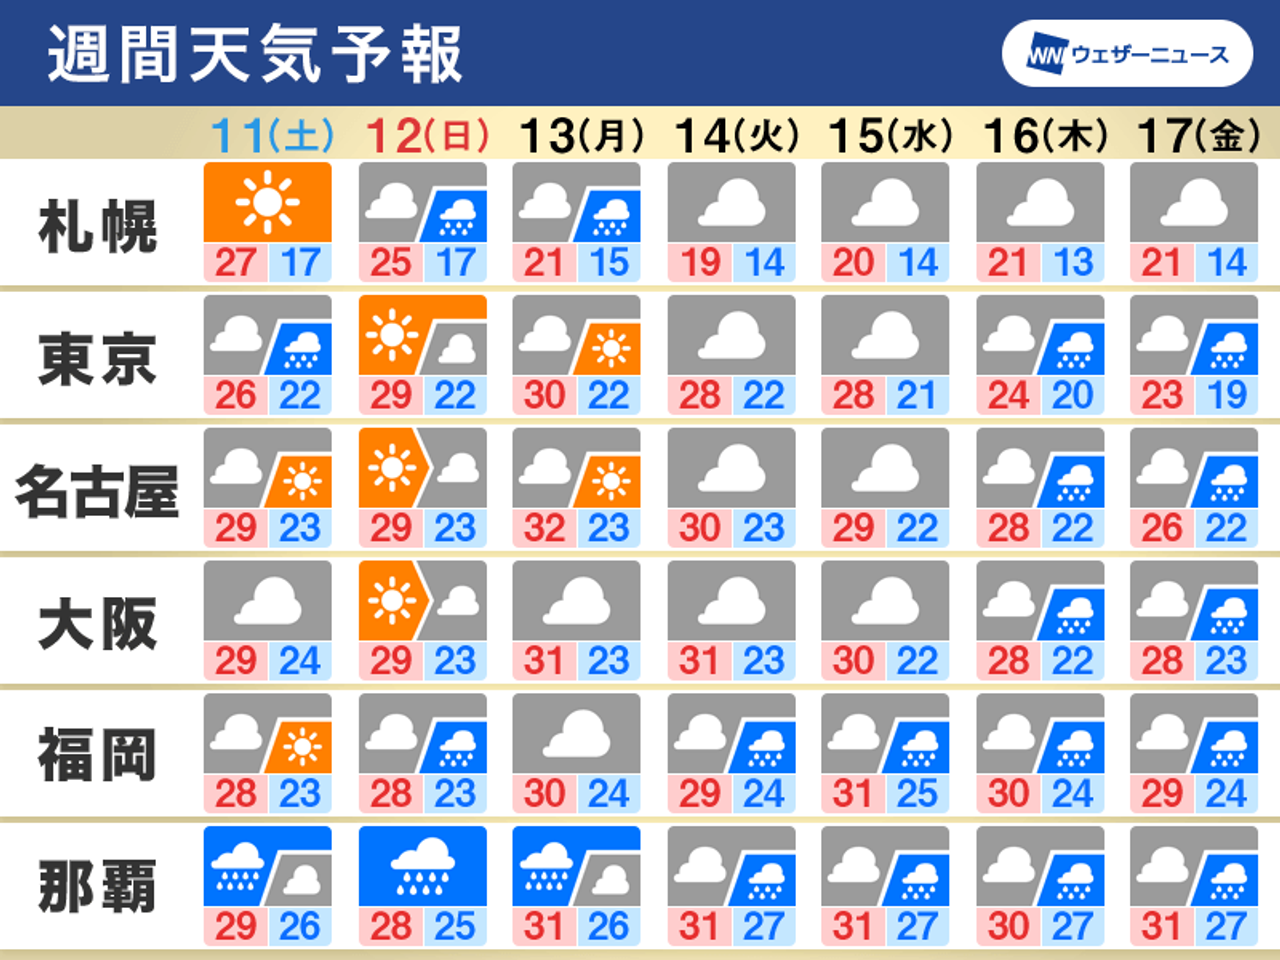 2021/09/10 05:48公開の週間天気予報